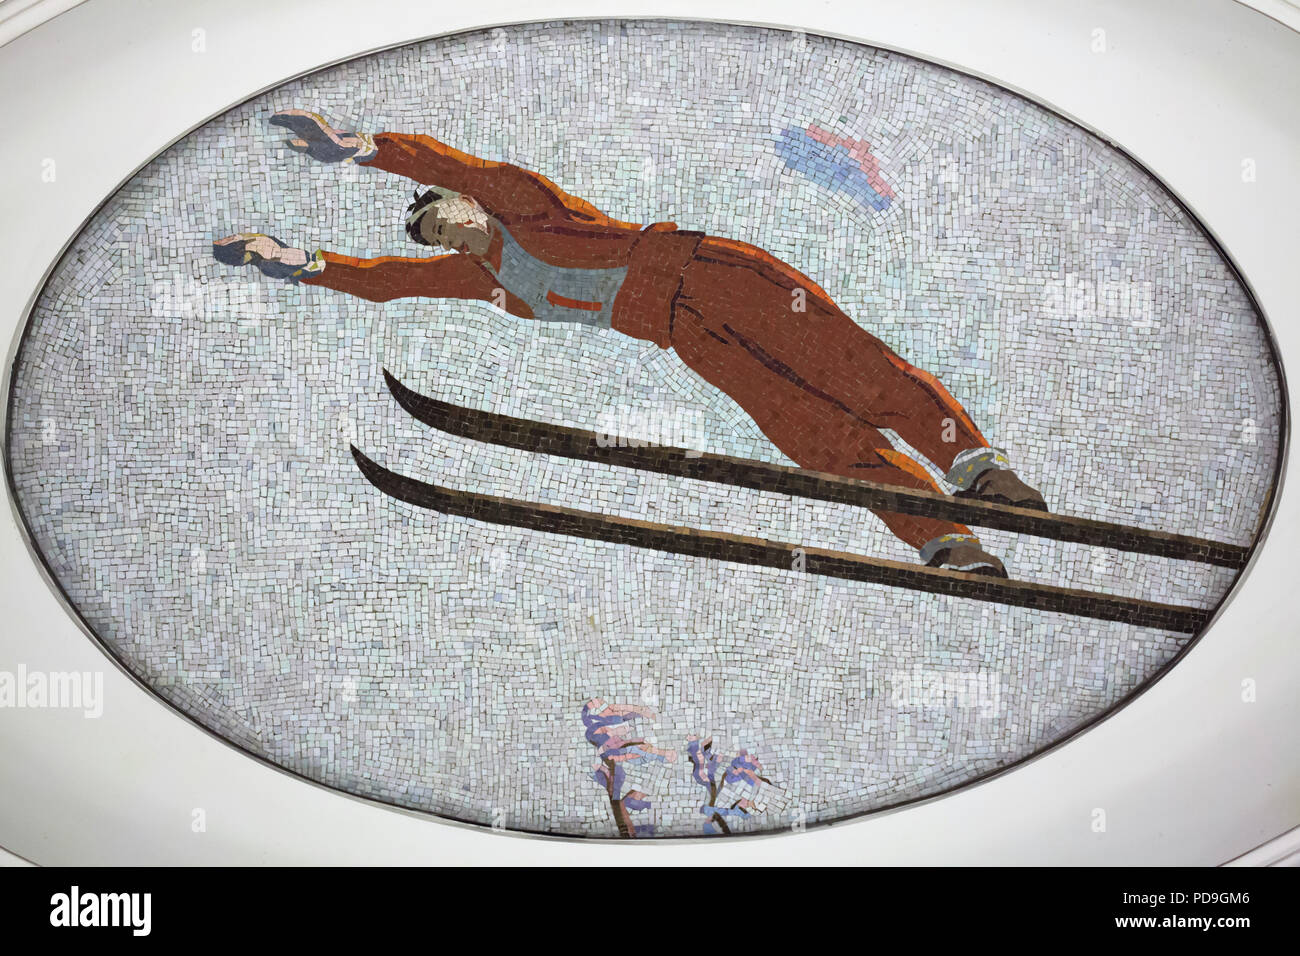 Der Skispringer in der Decke Mosaik von sowjetischen Künstler Alexander Deyneka im U-Bahnhof Majakowskaja in Moskau, Rußland, mit dargestellt. Eines der Mosaike aus der dargelegten vierundzwanzig Stunden in den sowjetischen Luftraum von Russischen Mosaik master Vladimir Frolov im Jahre 1930 montiert. Stockfoto